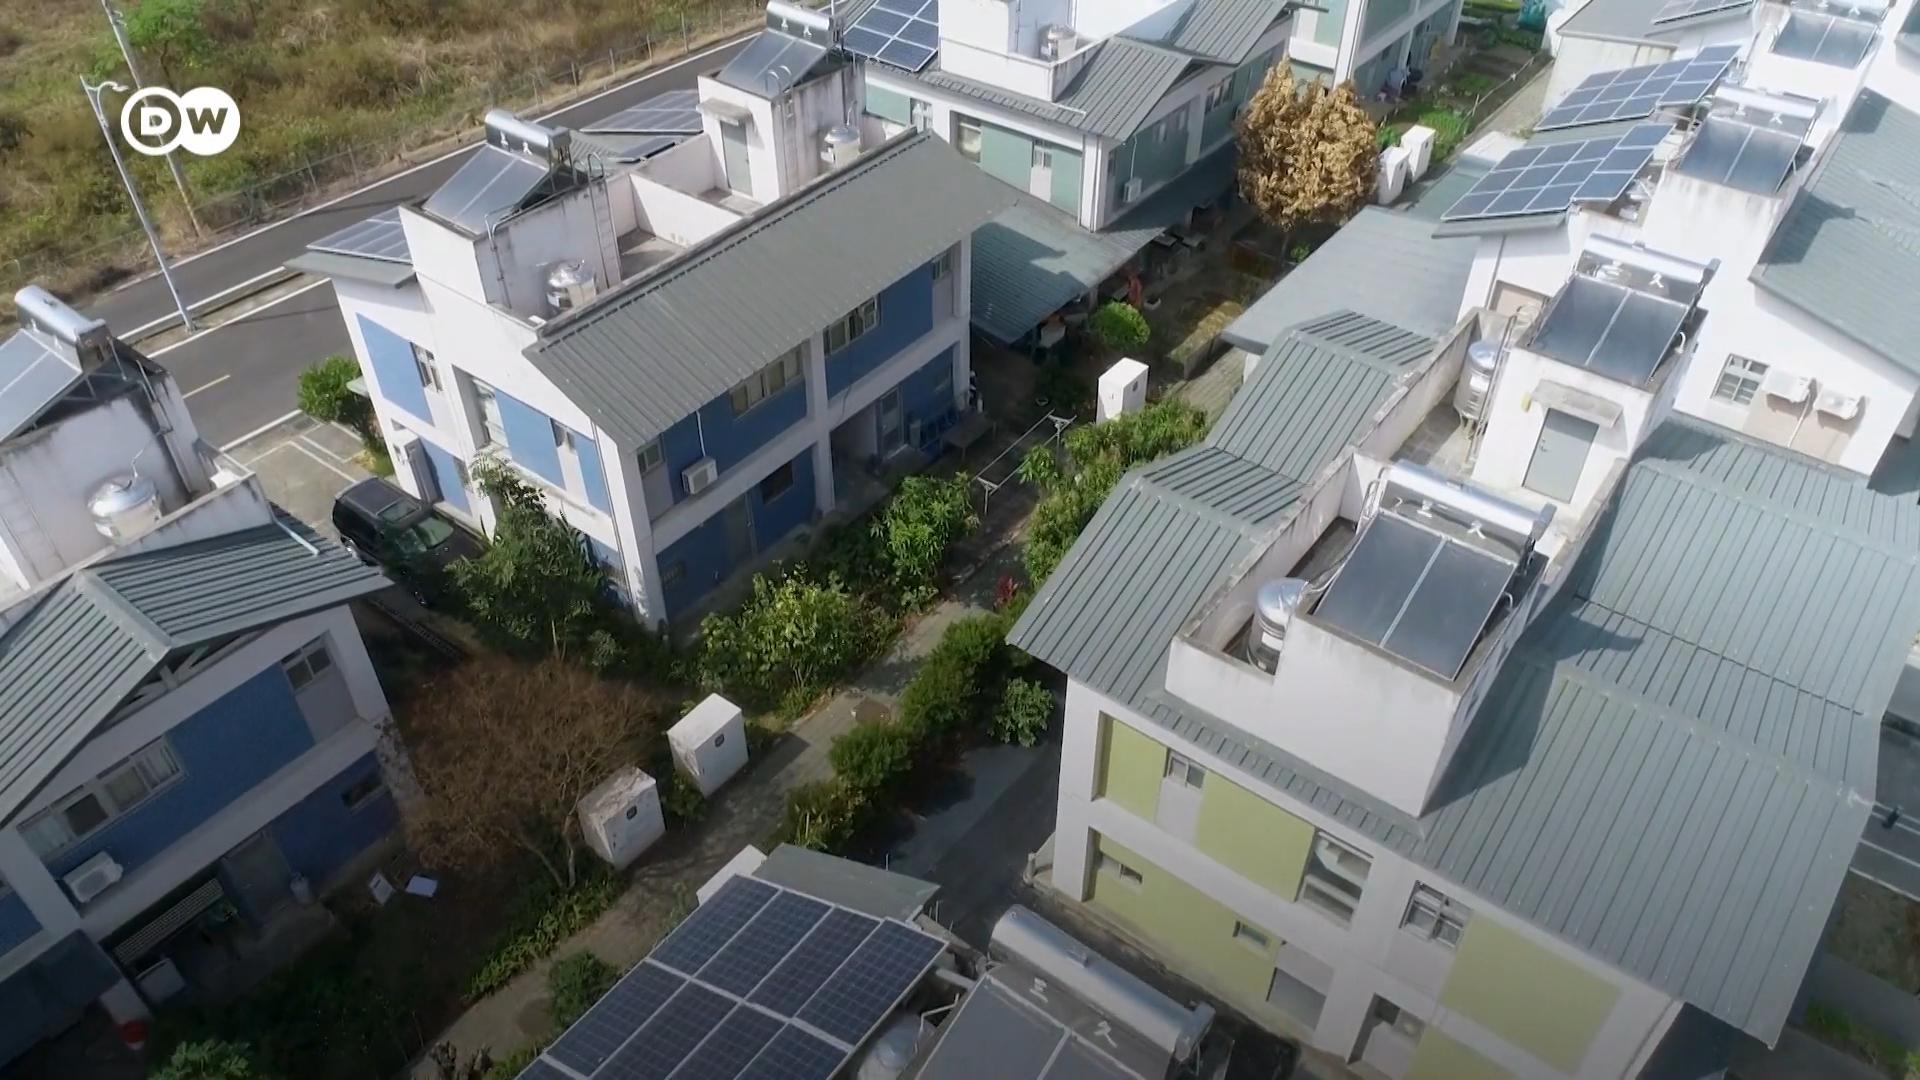 台灣在2022年曾經發生過三次大停電事故。不過，高雄的日光小林社區卻憑藉自給自足的太陽能儲電系統，安然度過危機。他們將電動車上的廢舊電池與屋頂太陽能發電板結合起來，實現了清潔電力自給自足。